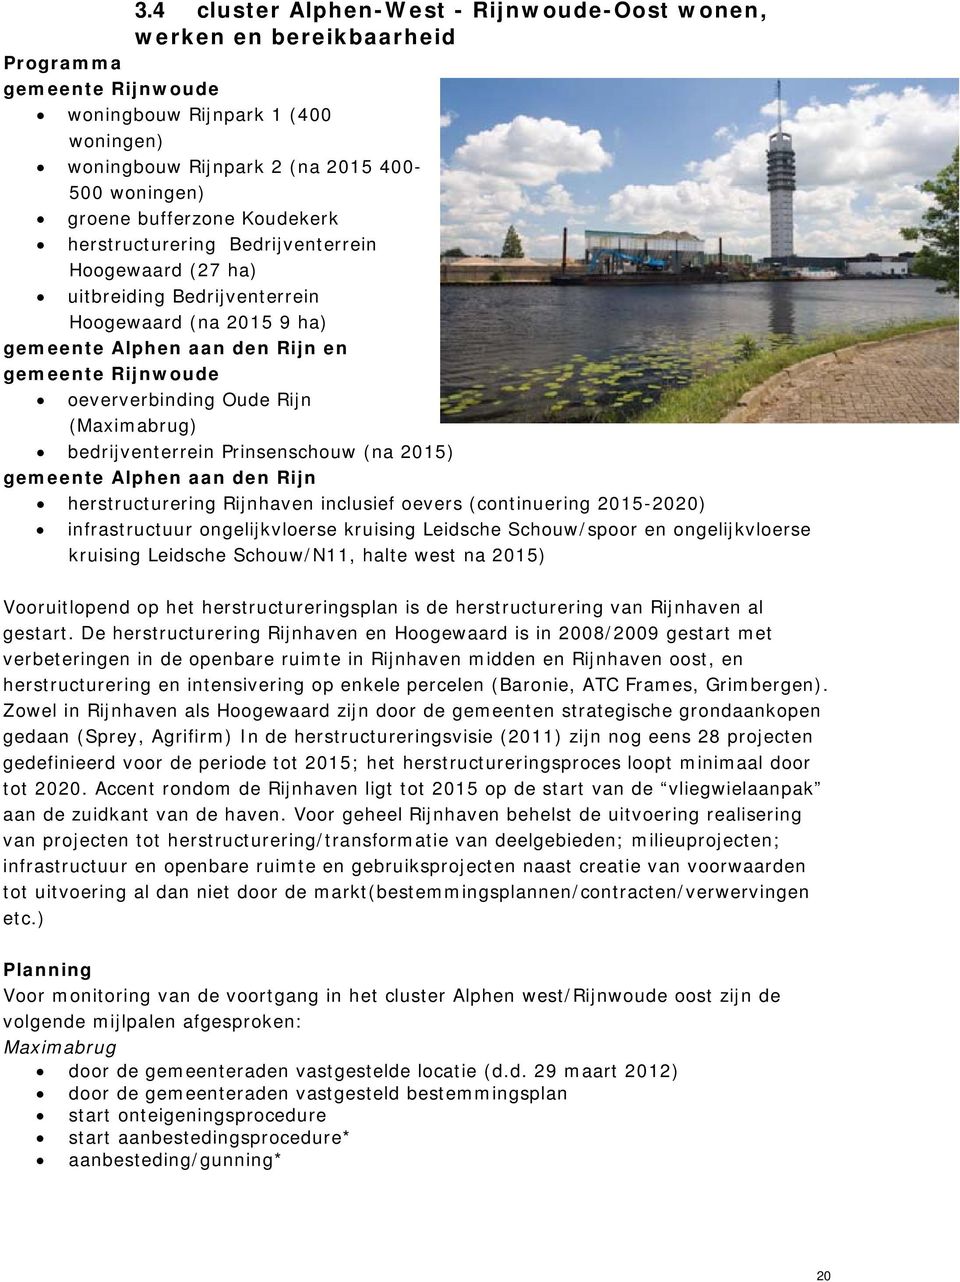 Oude Rijn (Maximabrug) bedrijventerrein Prinsenschouw (na 2015) gemeente Alphen aan den Rijn herstructurering Rijnhaven inclusief oevers (continuering 2015-2020) infrastructuur ongelijkvloerse